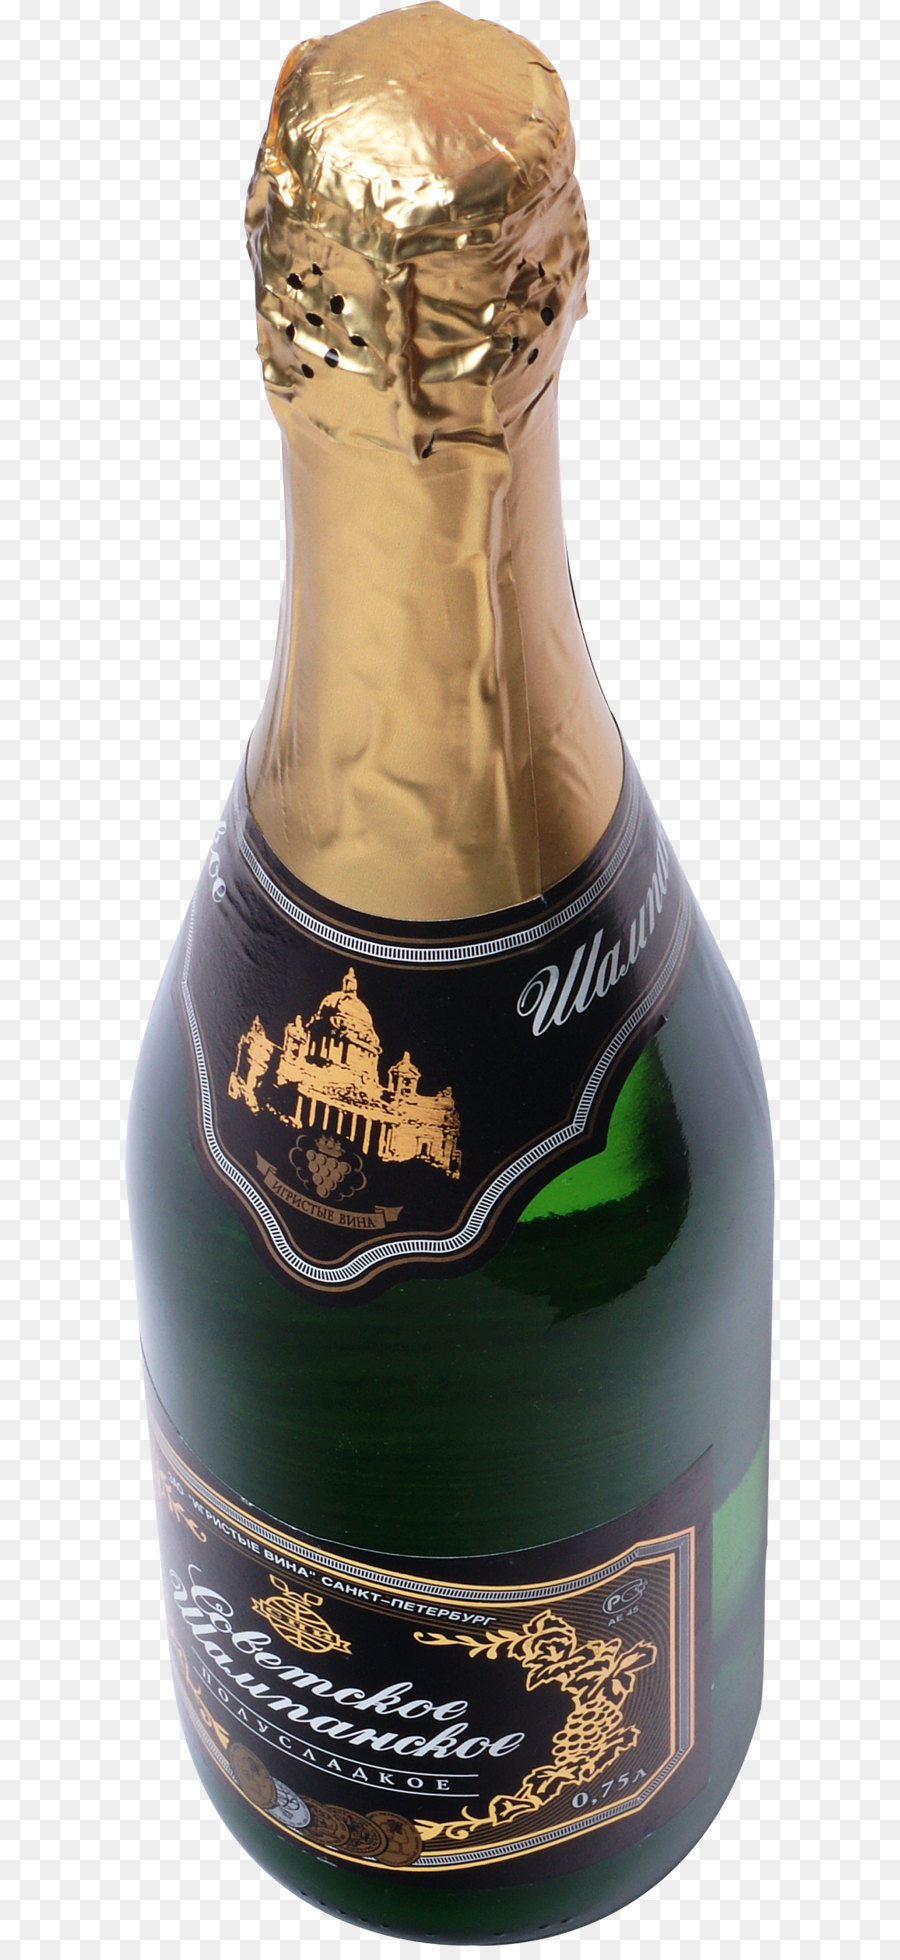 Champagner Wine Moet & Chandon Bottle - Flasche Champagner PNG